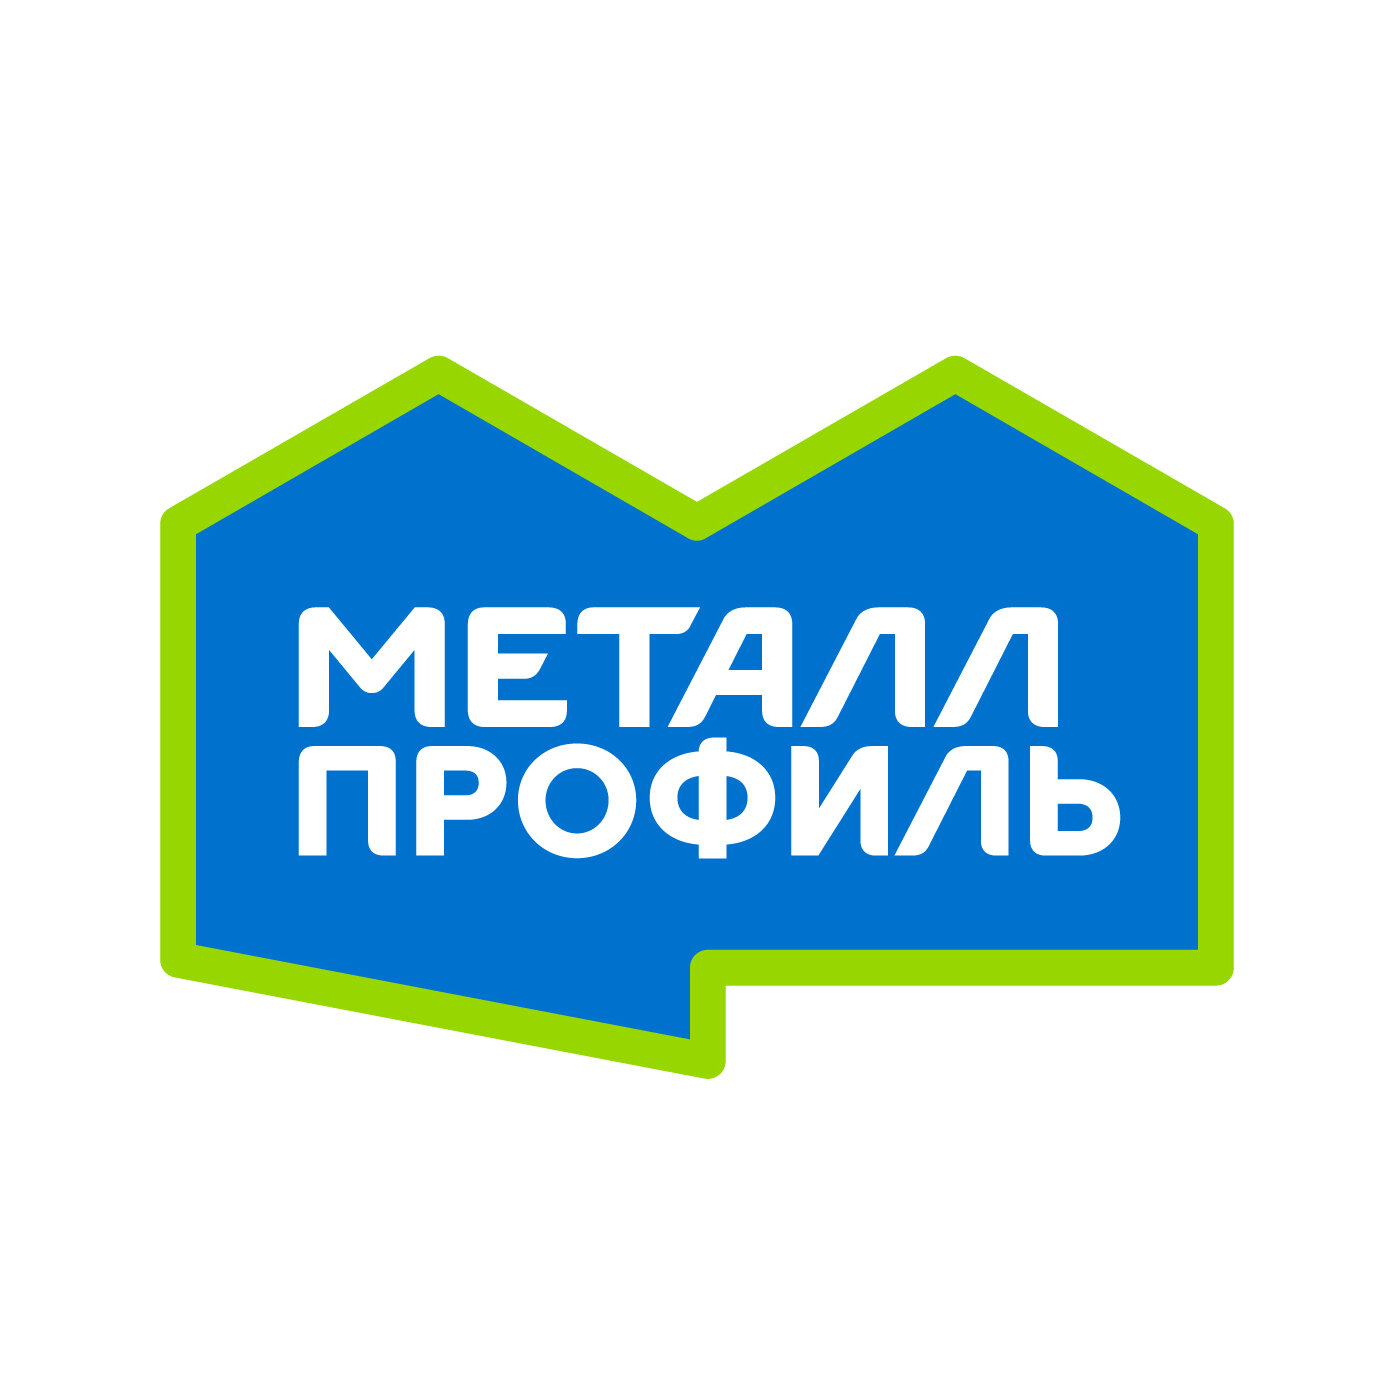 Лучшие строительные компании Улан-Удэ рядом со мной на карте – рейтинг,  цены, фото, телефоны, адреса, отзывы – Zoon.ru